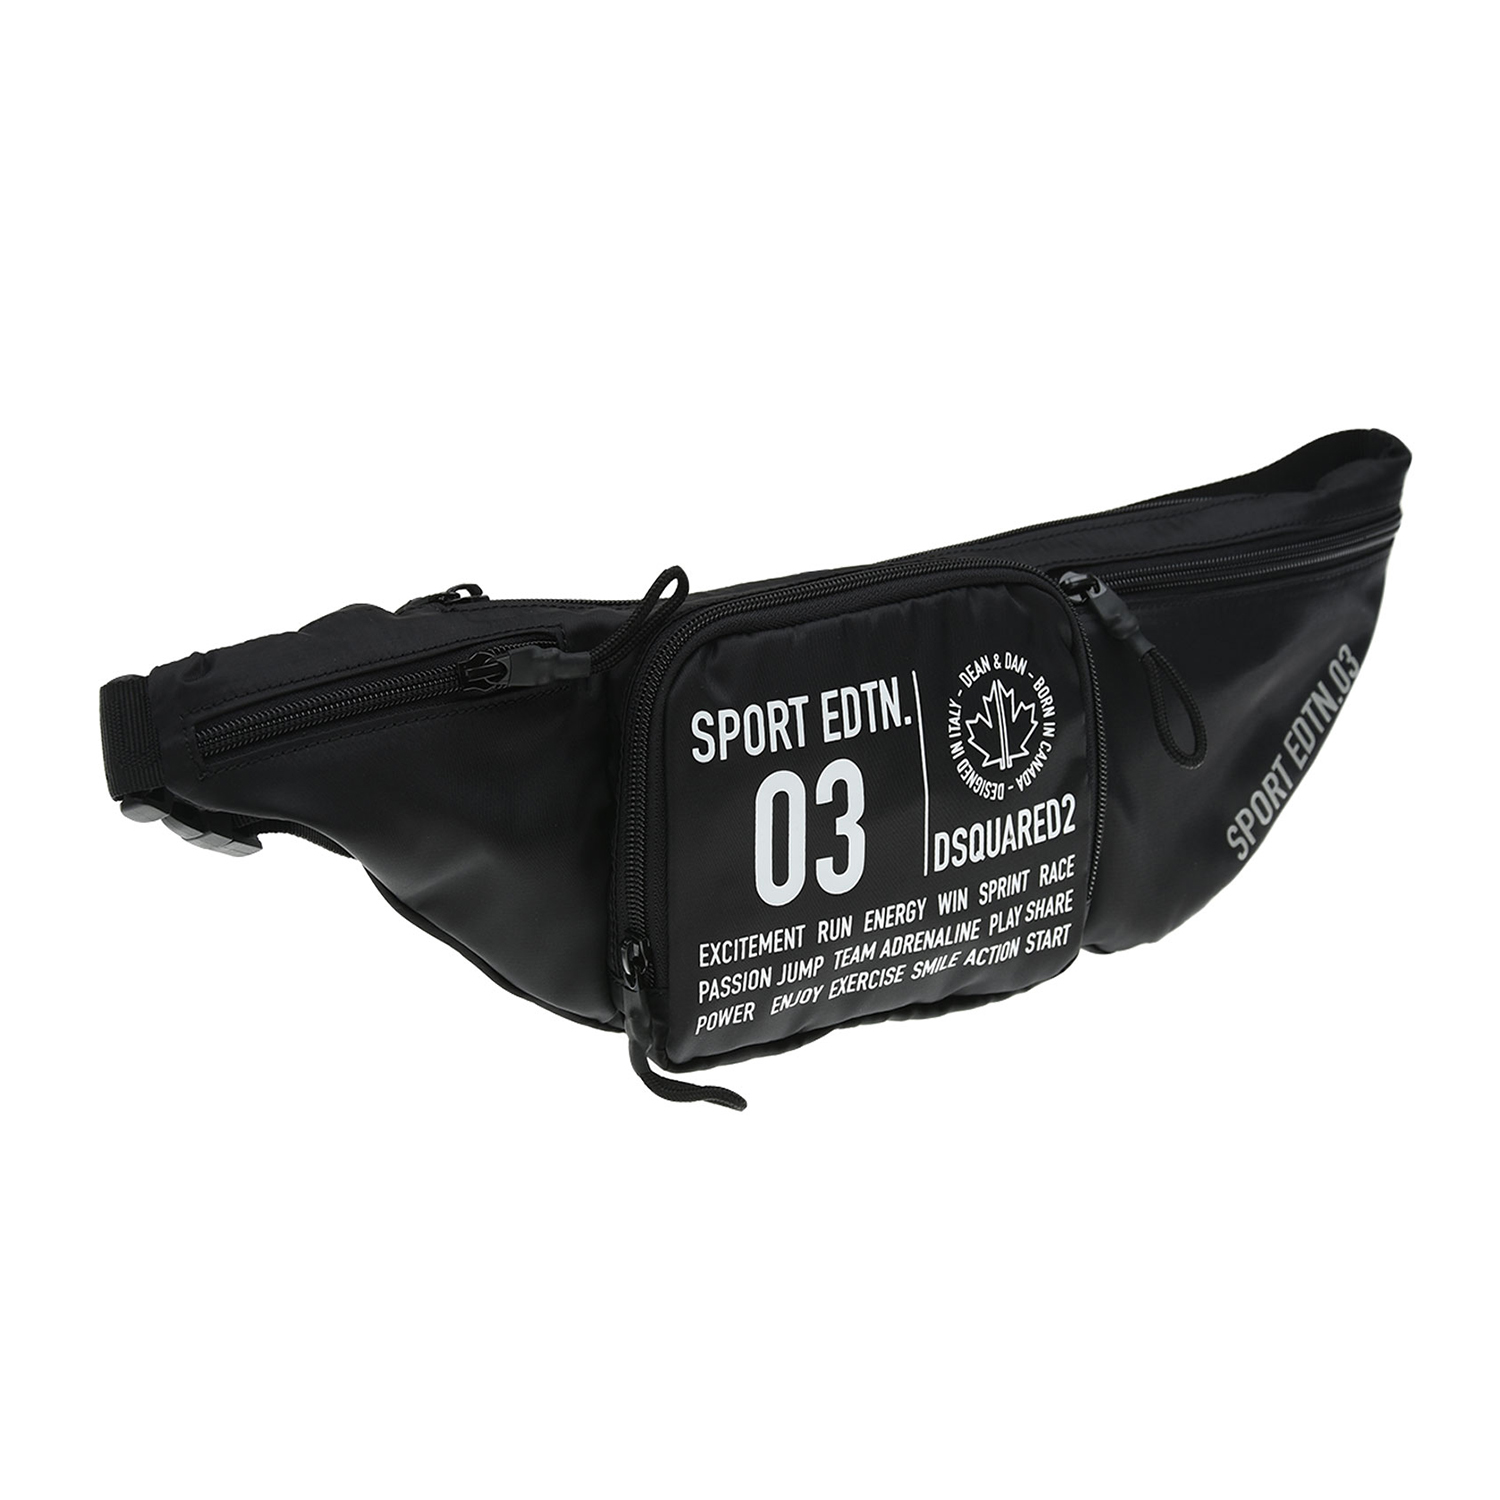 Черная поясная сумка с принтом "Sport edtn 03",15х7х45 см Dsquared2 детская, размер unica, цвет черный